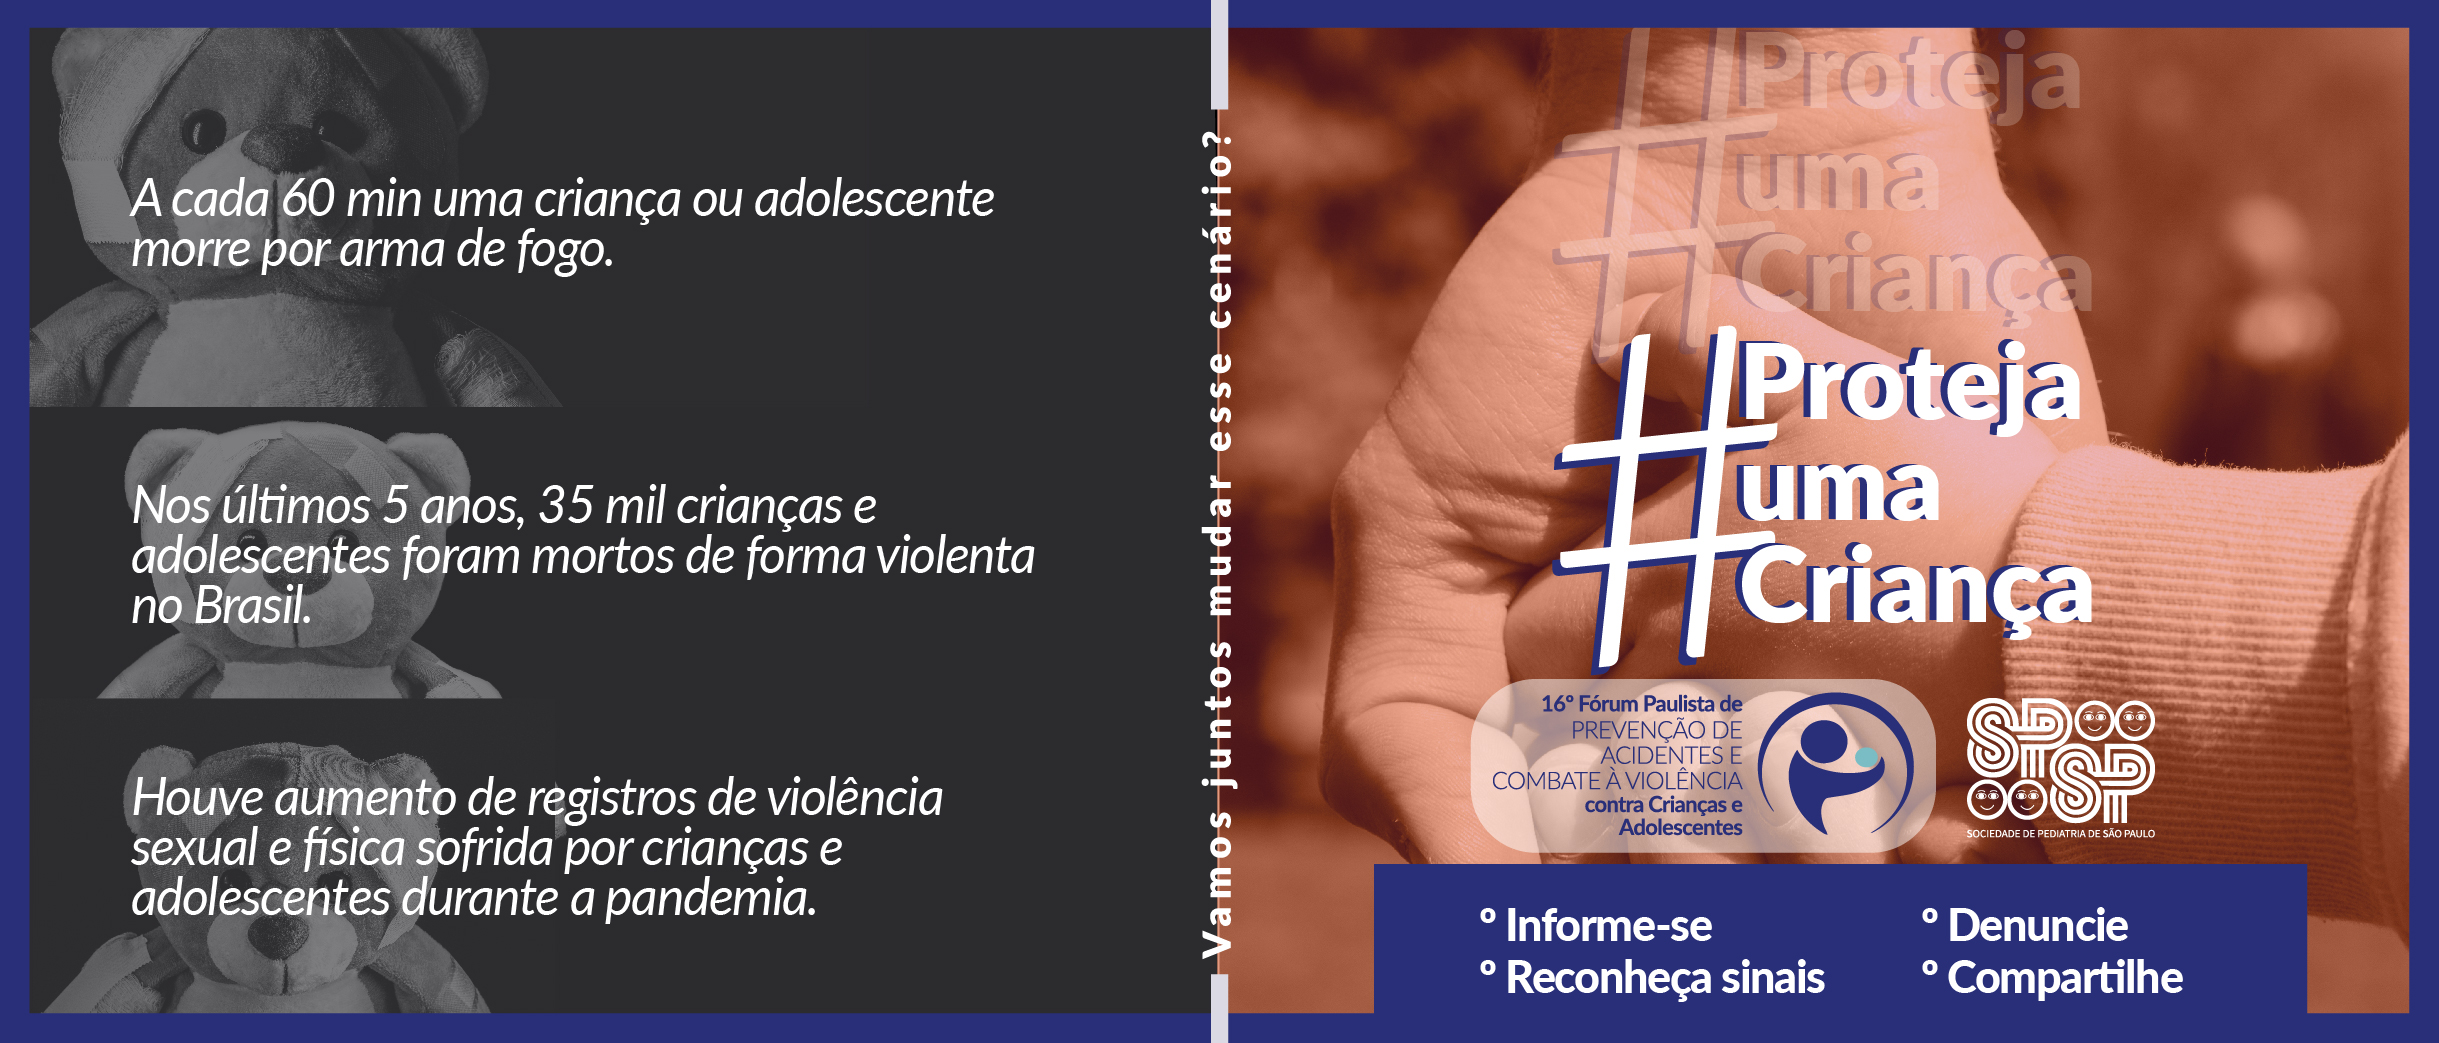 Movimento #protejaumacriança é lançado junto a abertura de inscrições para evento de combate à violência